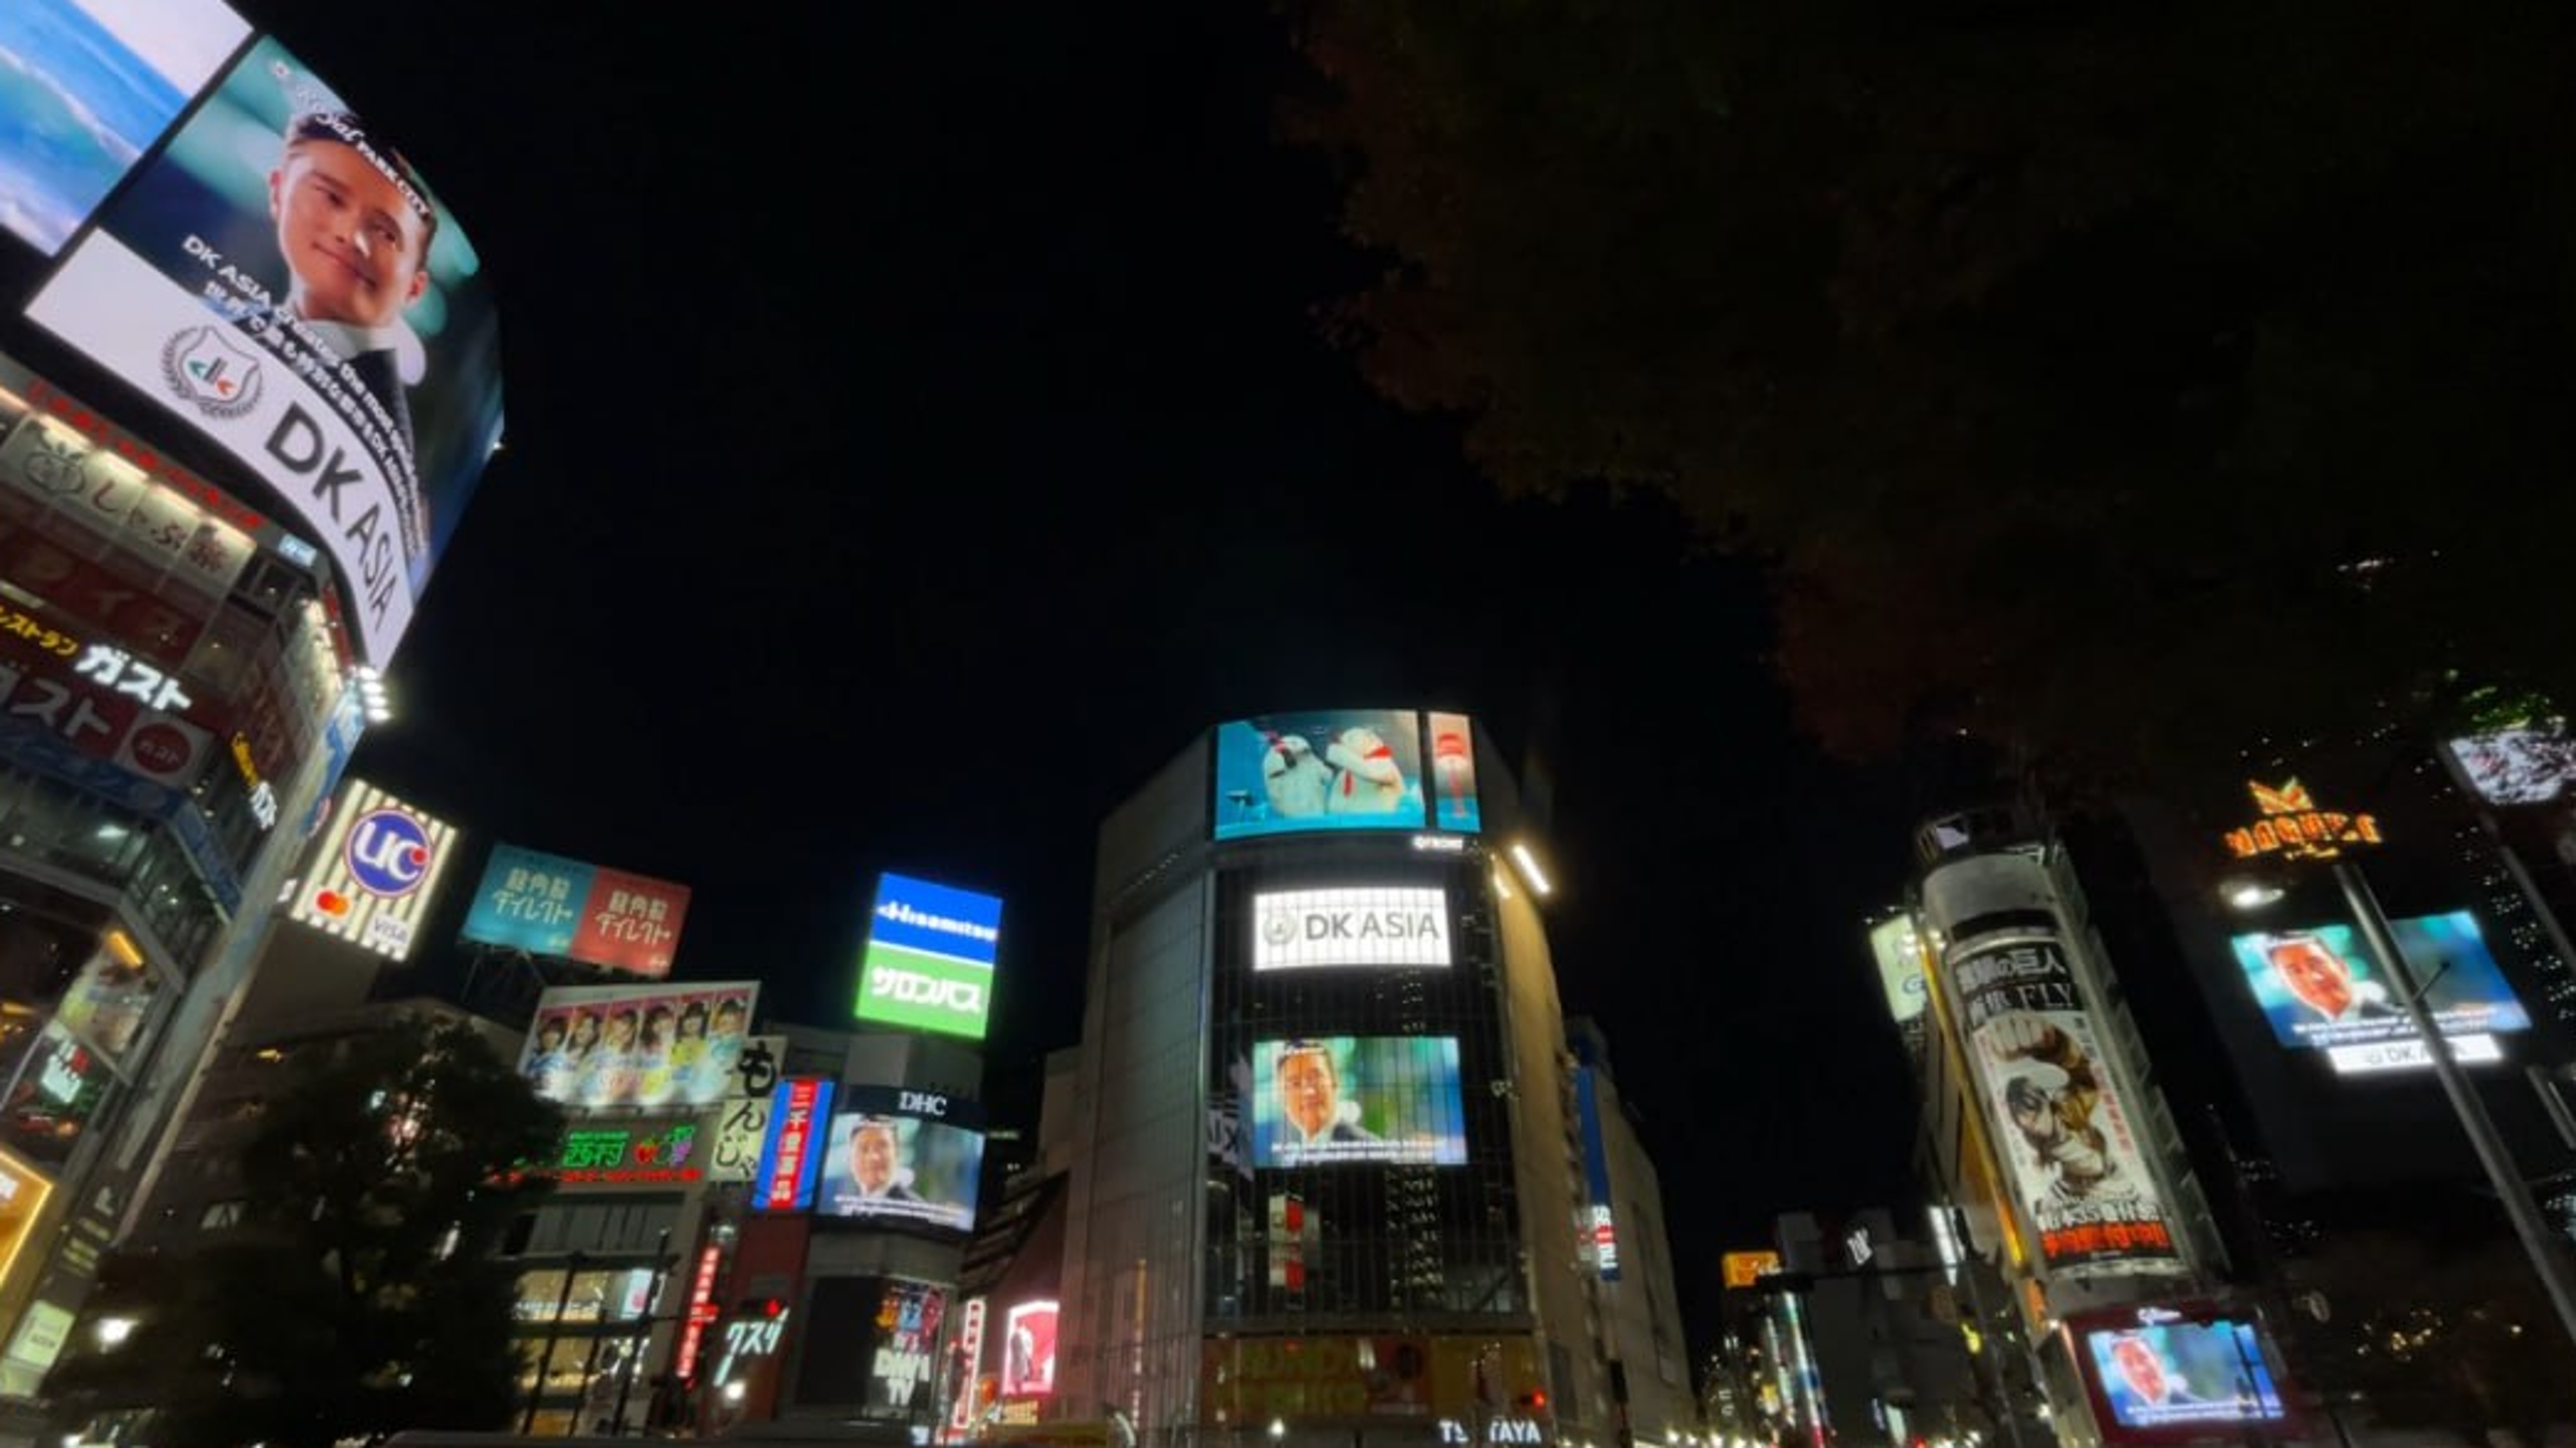 11월 13일 부터 진행된 일본 도쿄 시부야에서 진행된 ‘로열파크씨티’ 브랜드 광고 영상 모습(사진=DK아시아)